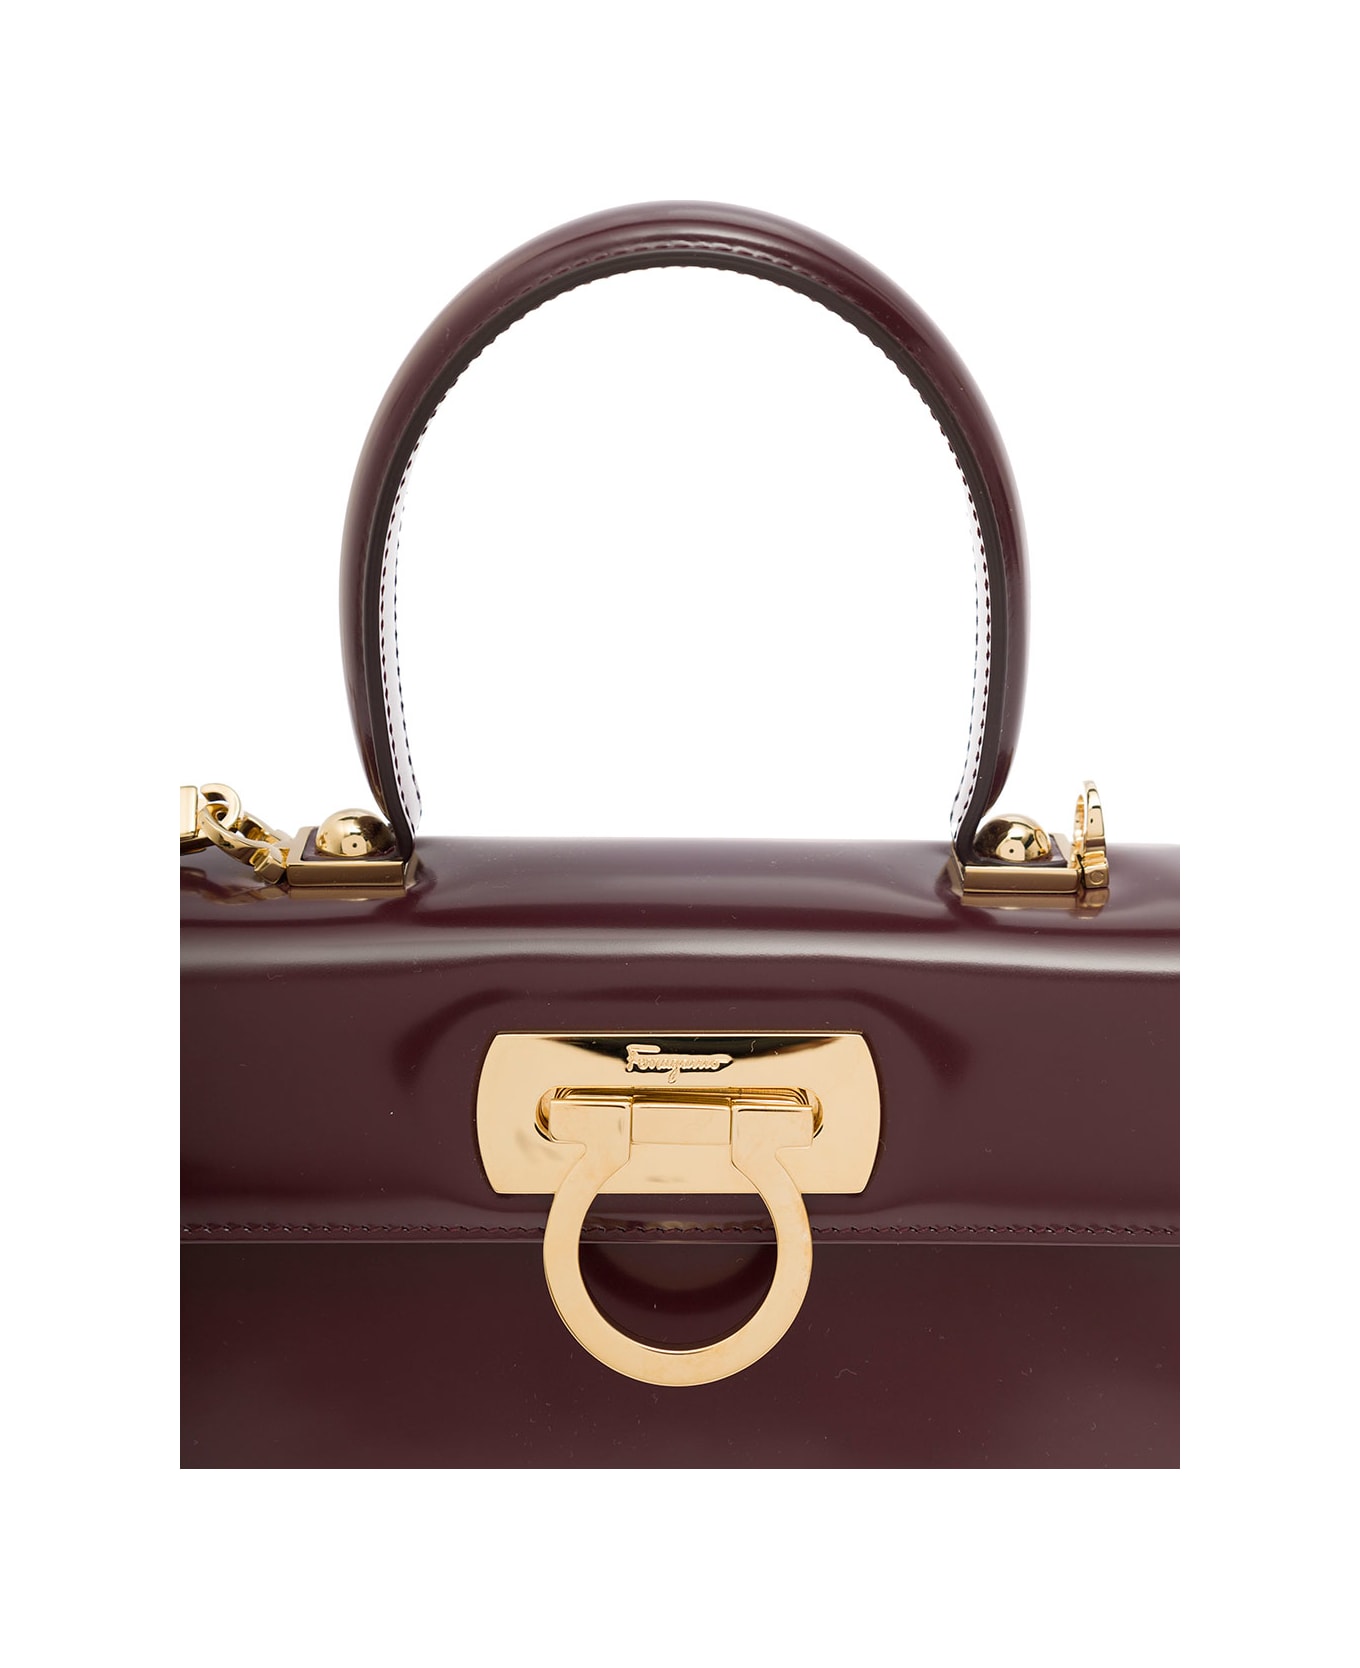 Ferragamo Bordeaux Handbag With Gancini Closure In Patent Leather Woman - Bordeaux